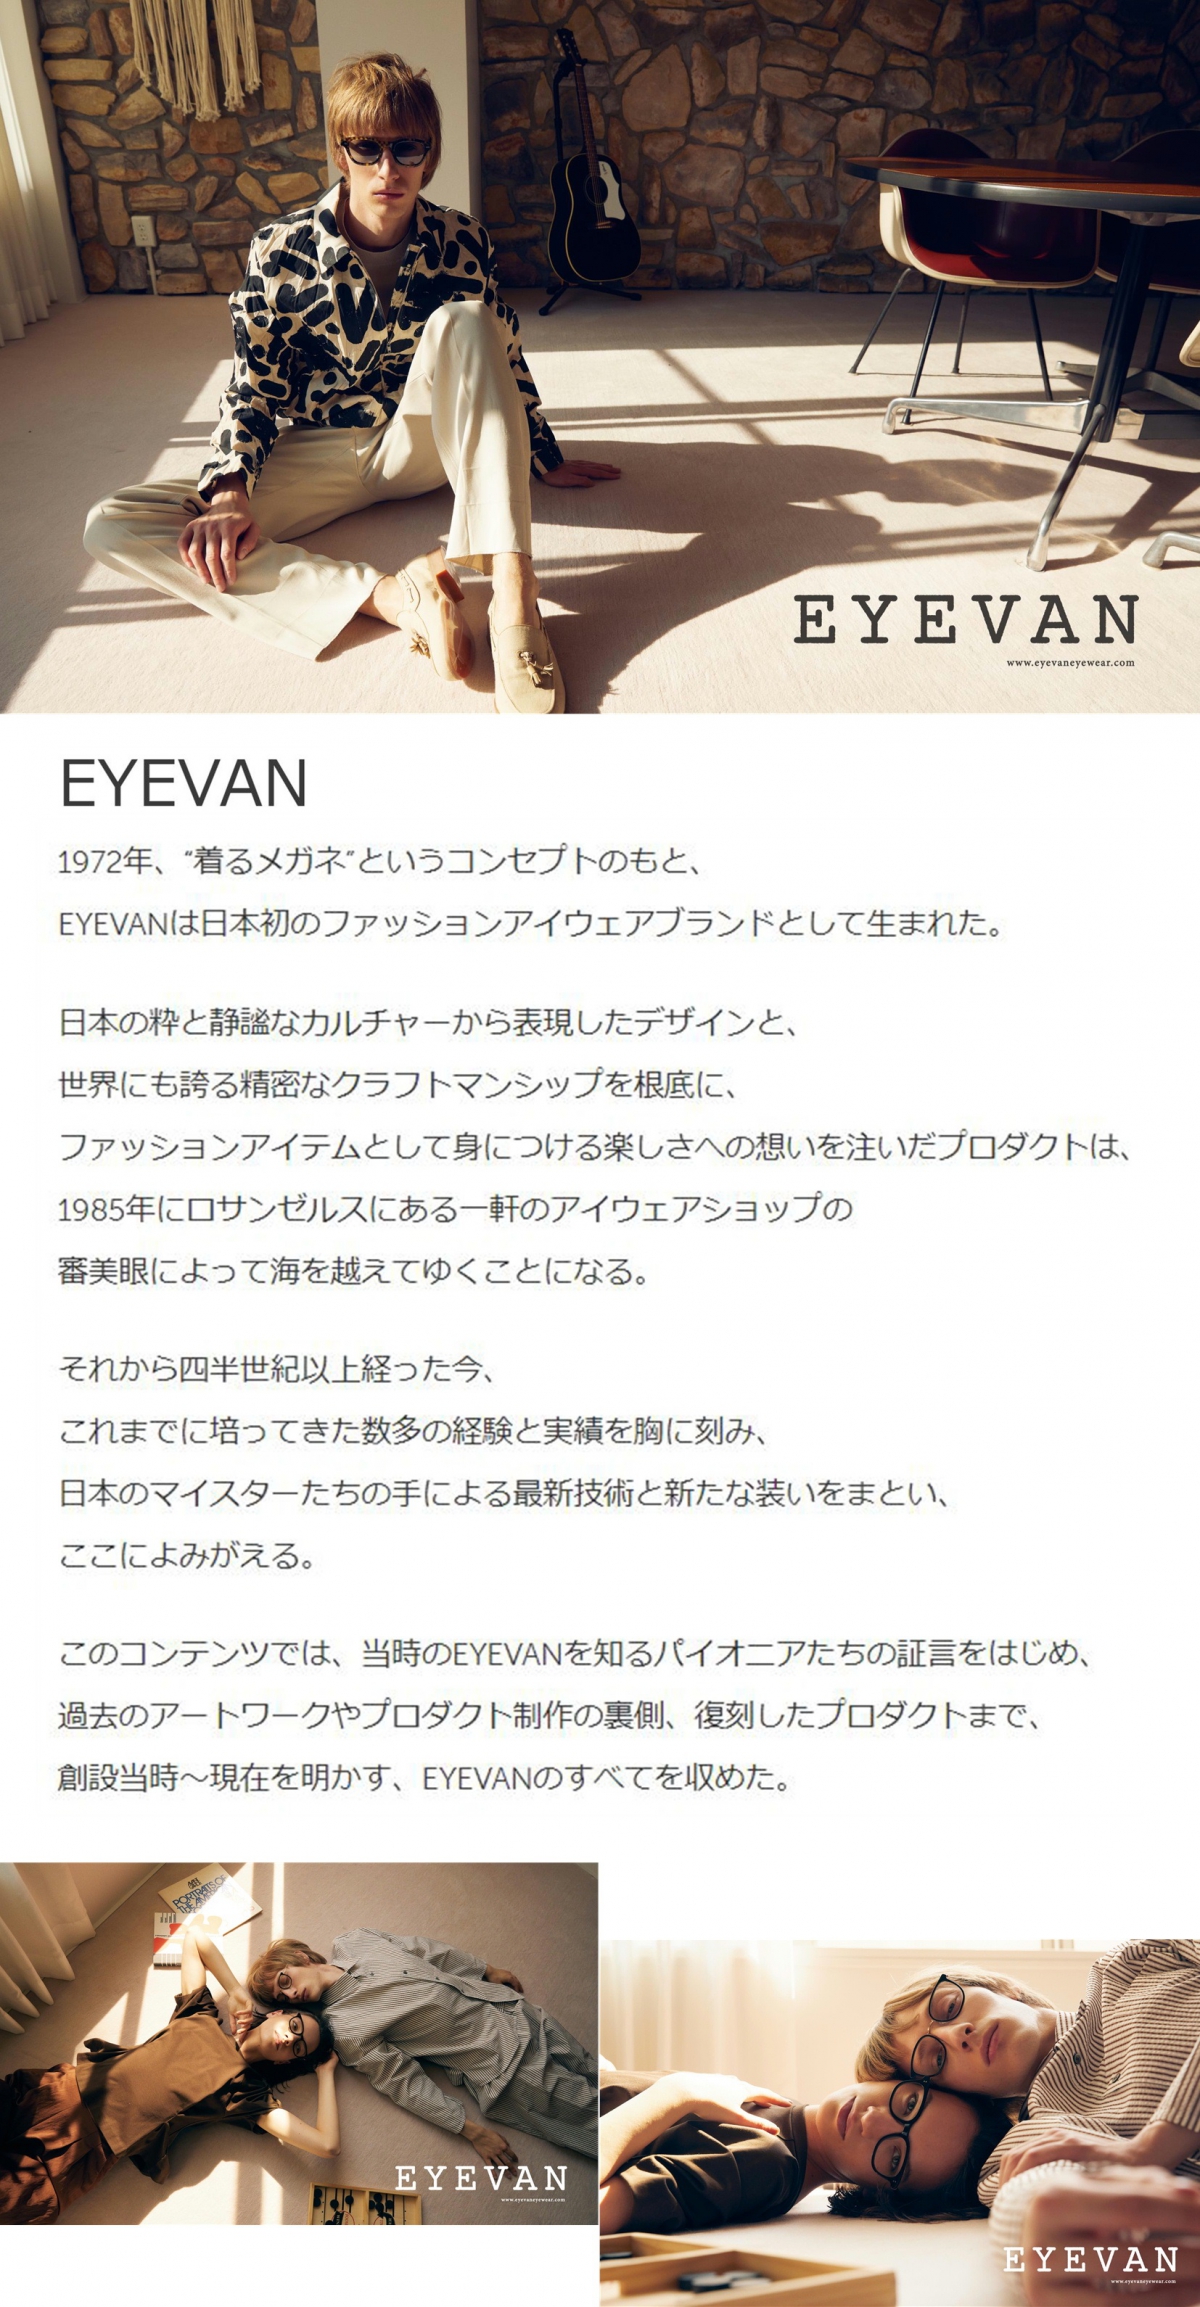 【EYEVAN】1972年、 "着るメガネ”というコンセプトのもと、EYEVANは日本初のファッションアイウェアブランドとして生まれた。
日本の粋と静謐なカルチャーから表現したデザインと、世界にも誇る精密なクラフトマンシップを根底に、ファッションアイテムとして身につける楽しさへの想いを注いだプロダクトは、1985年にロサンゼルスにある一軒のアイウェアショップの審美眼によって海を越えてゆくことになる。
それから四半世紀以上経った今、これまでに培ってきた数多の経験と実績を胸に刻み、日本のマイスターたちの手による最新技術と新たな装いをまとい、ここによみがえる。このコンテンツでは、当時のEYEVANを知るパイオニアたちの証言をはじめ、 過去のアートワークやプロダクト制作の裏側、 復刻したプロダクトまで、創設当時〜現在を明かす、 EYEVANのすべてを収めた。